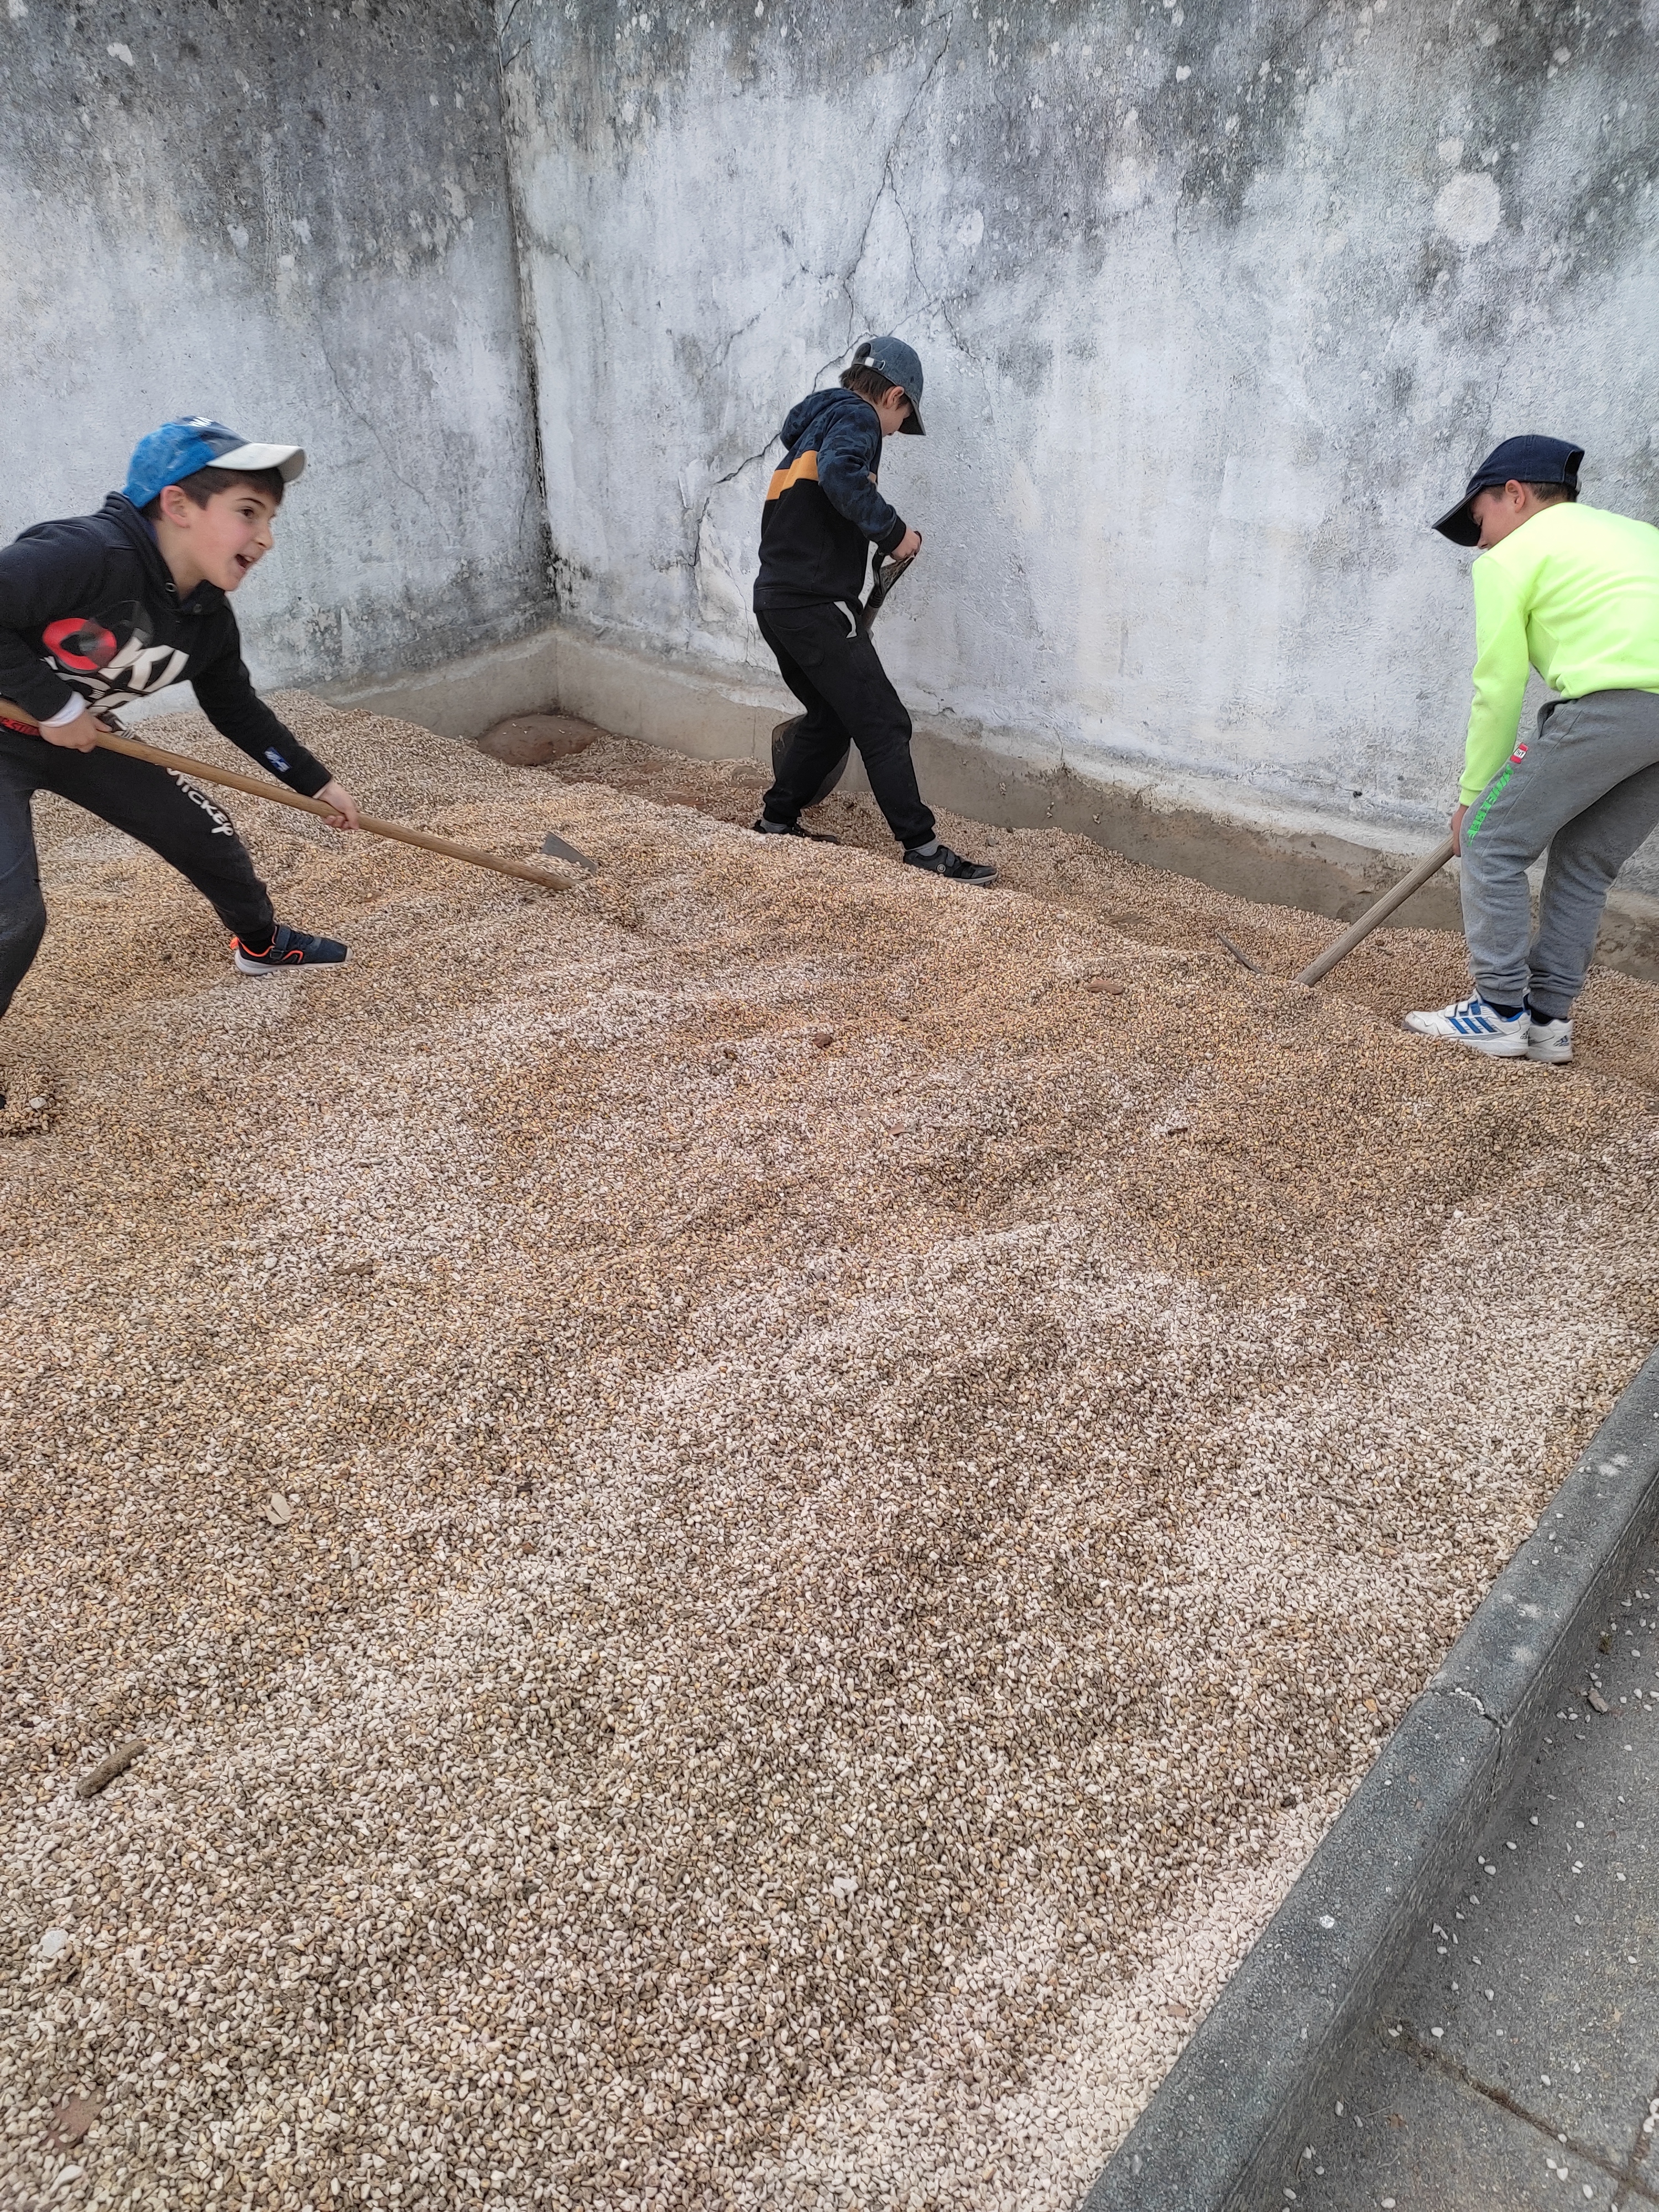 Tivemos que retirar areão para posteriormente colocarmos umas tábuas e preenchermos com terra.
Foi trabalhoso mas muito divertido!